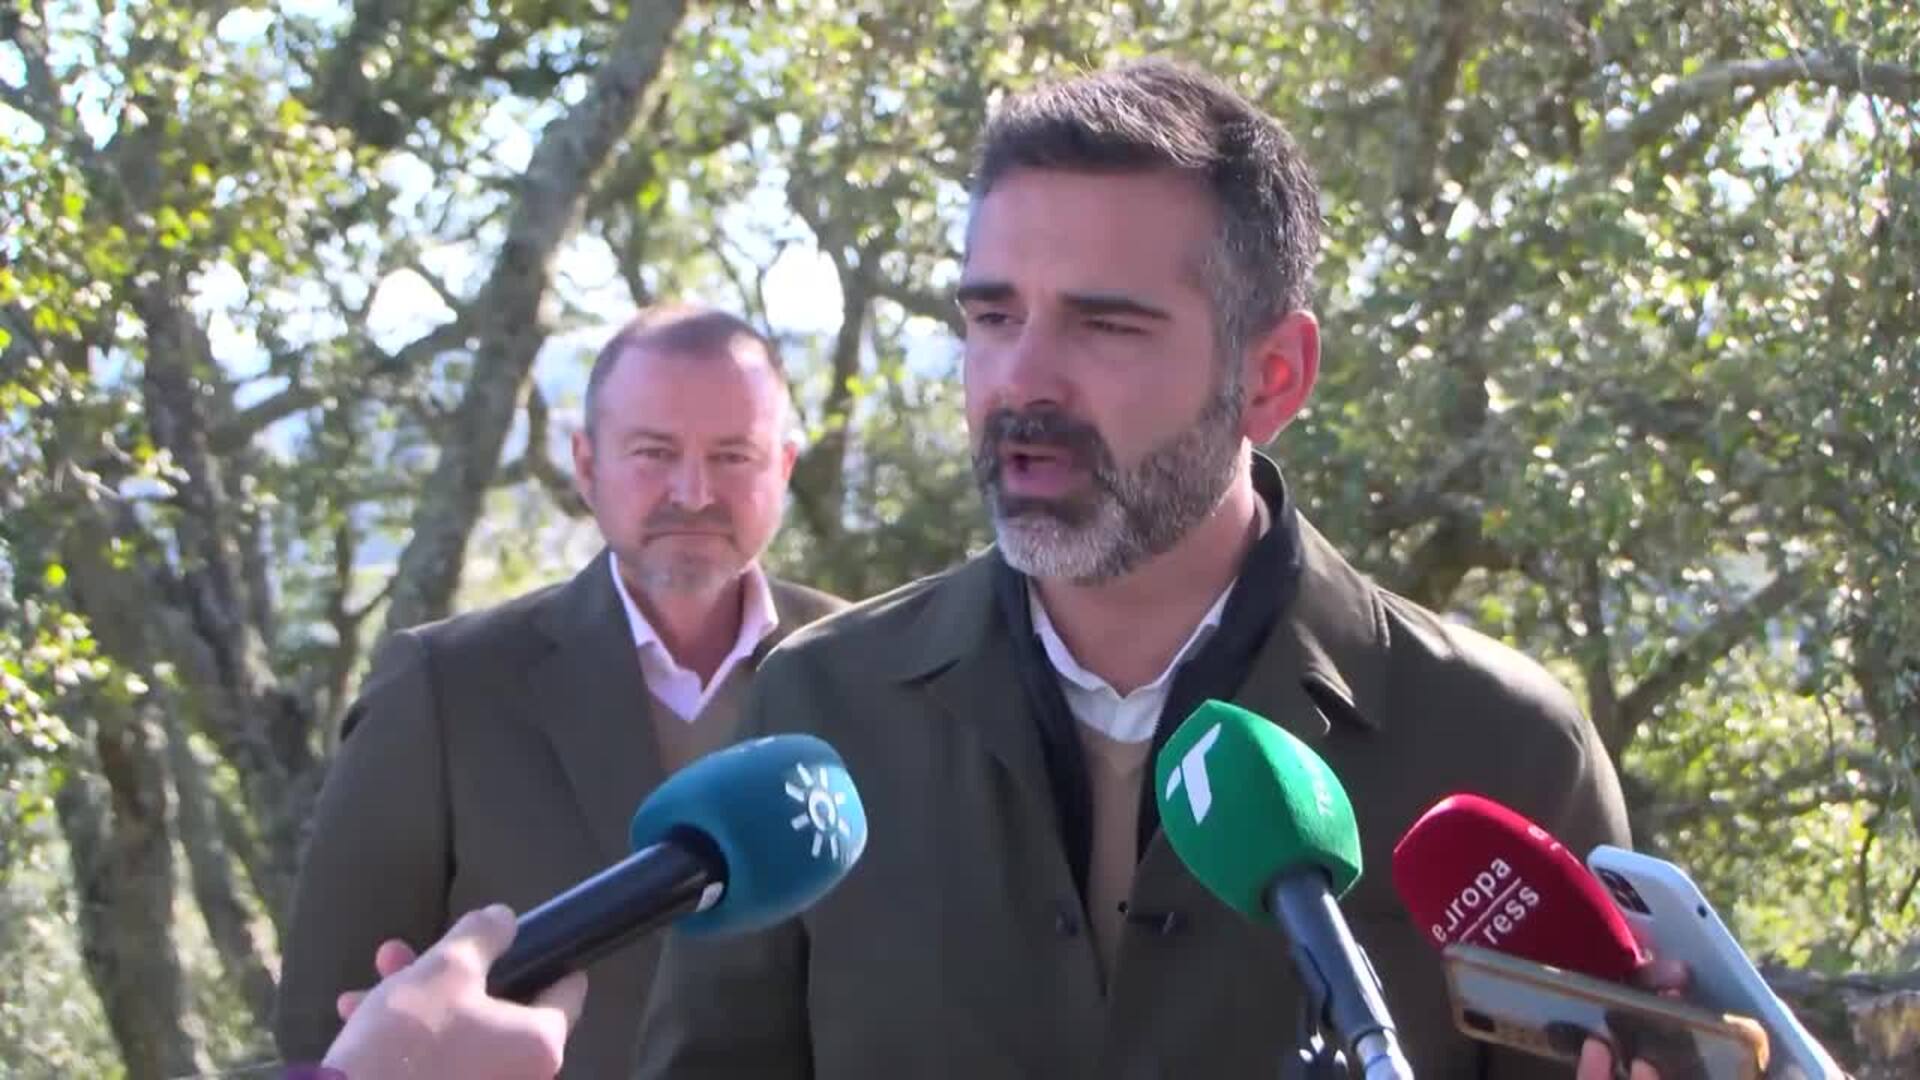 Junta compromete nueve líneas de acción dirigidas a conservar dehesas de la sierra de Huelva